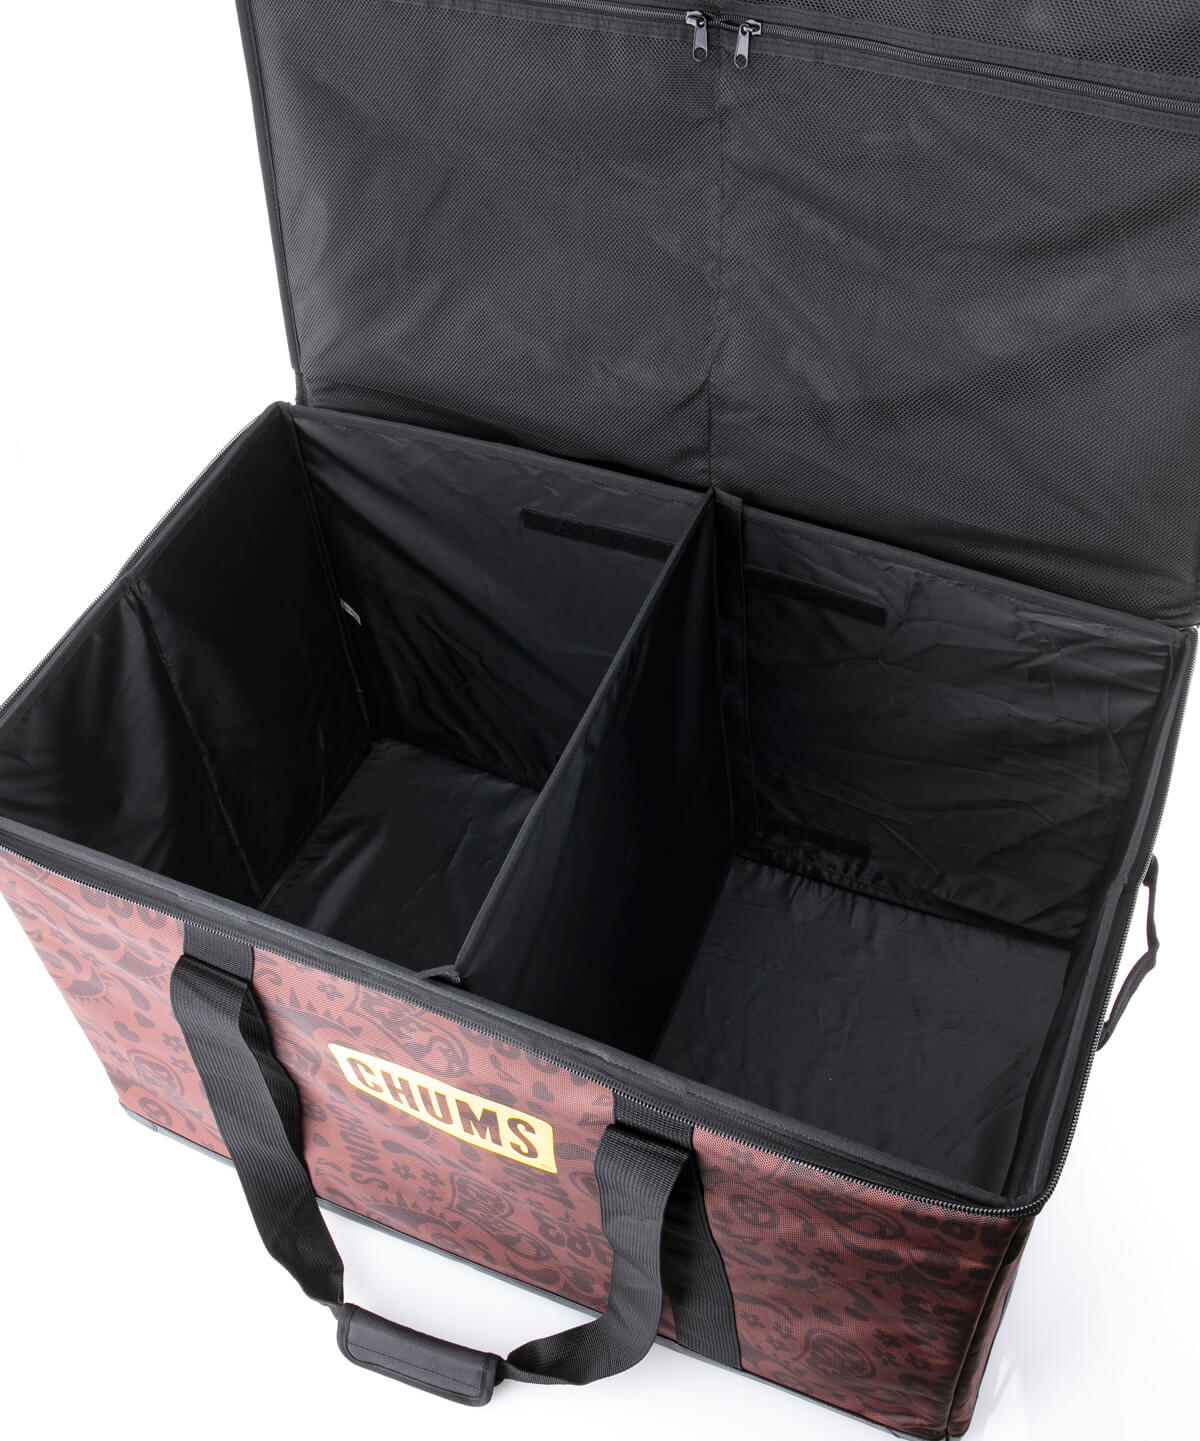 Foldable Box M フォーダブルボックスm キャンプ用品 収納ケース サイズなし Black キャンプ 用品 Chums チャムス アウトドアファッション公式通販